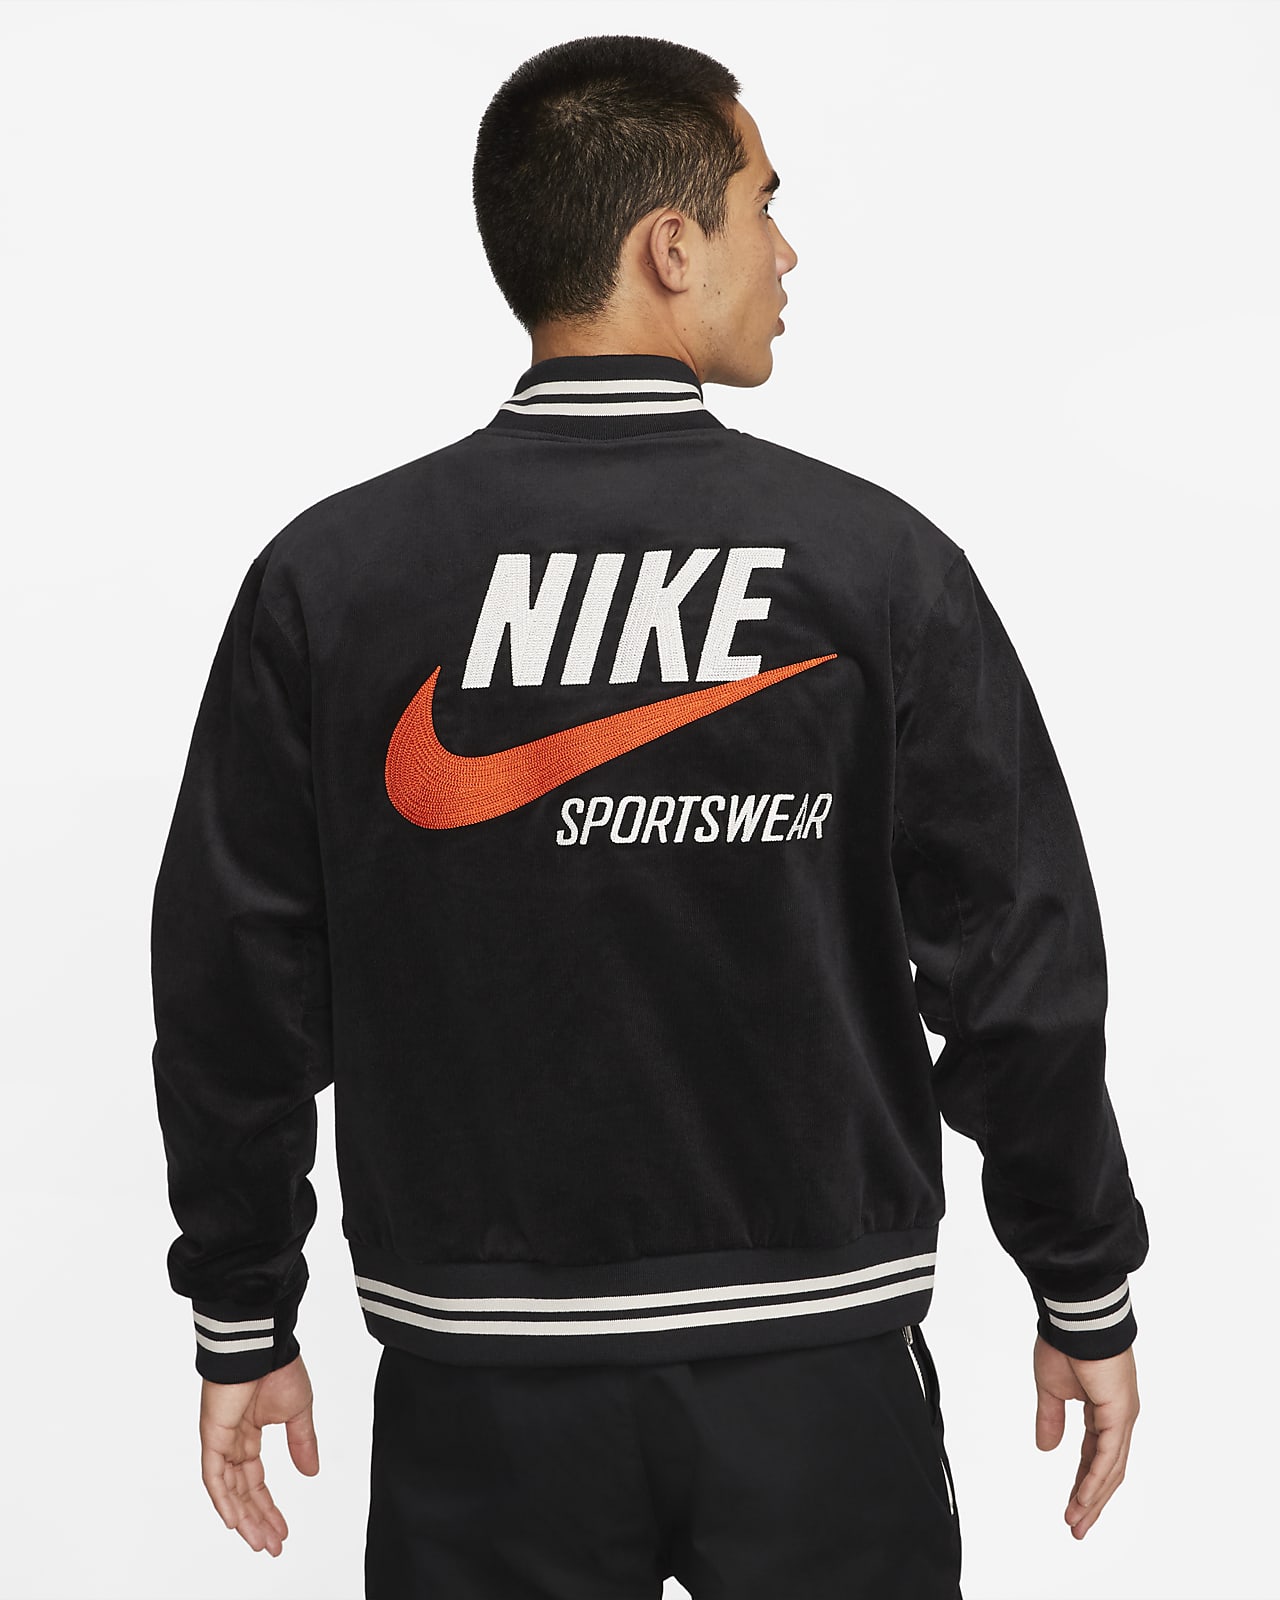 NIKE公式】ナイキ スポーツウェア トレンド メンズ ボンバージャケット